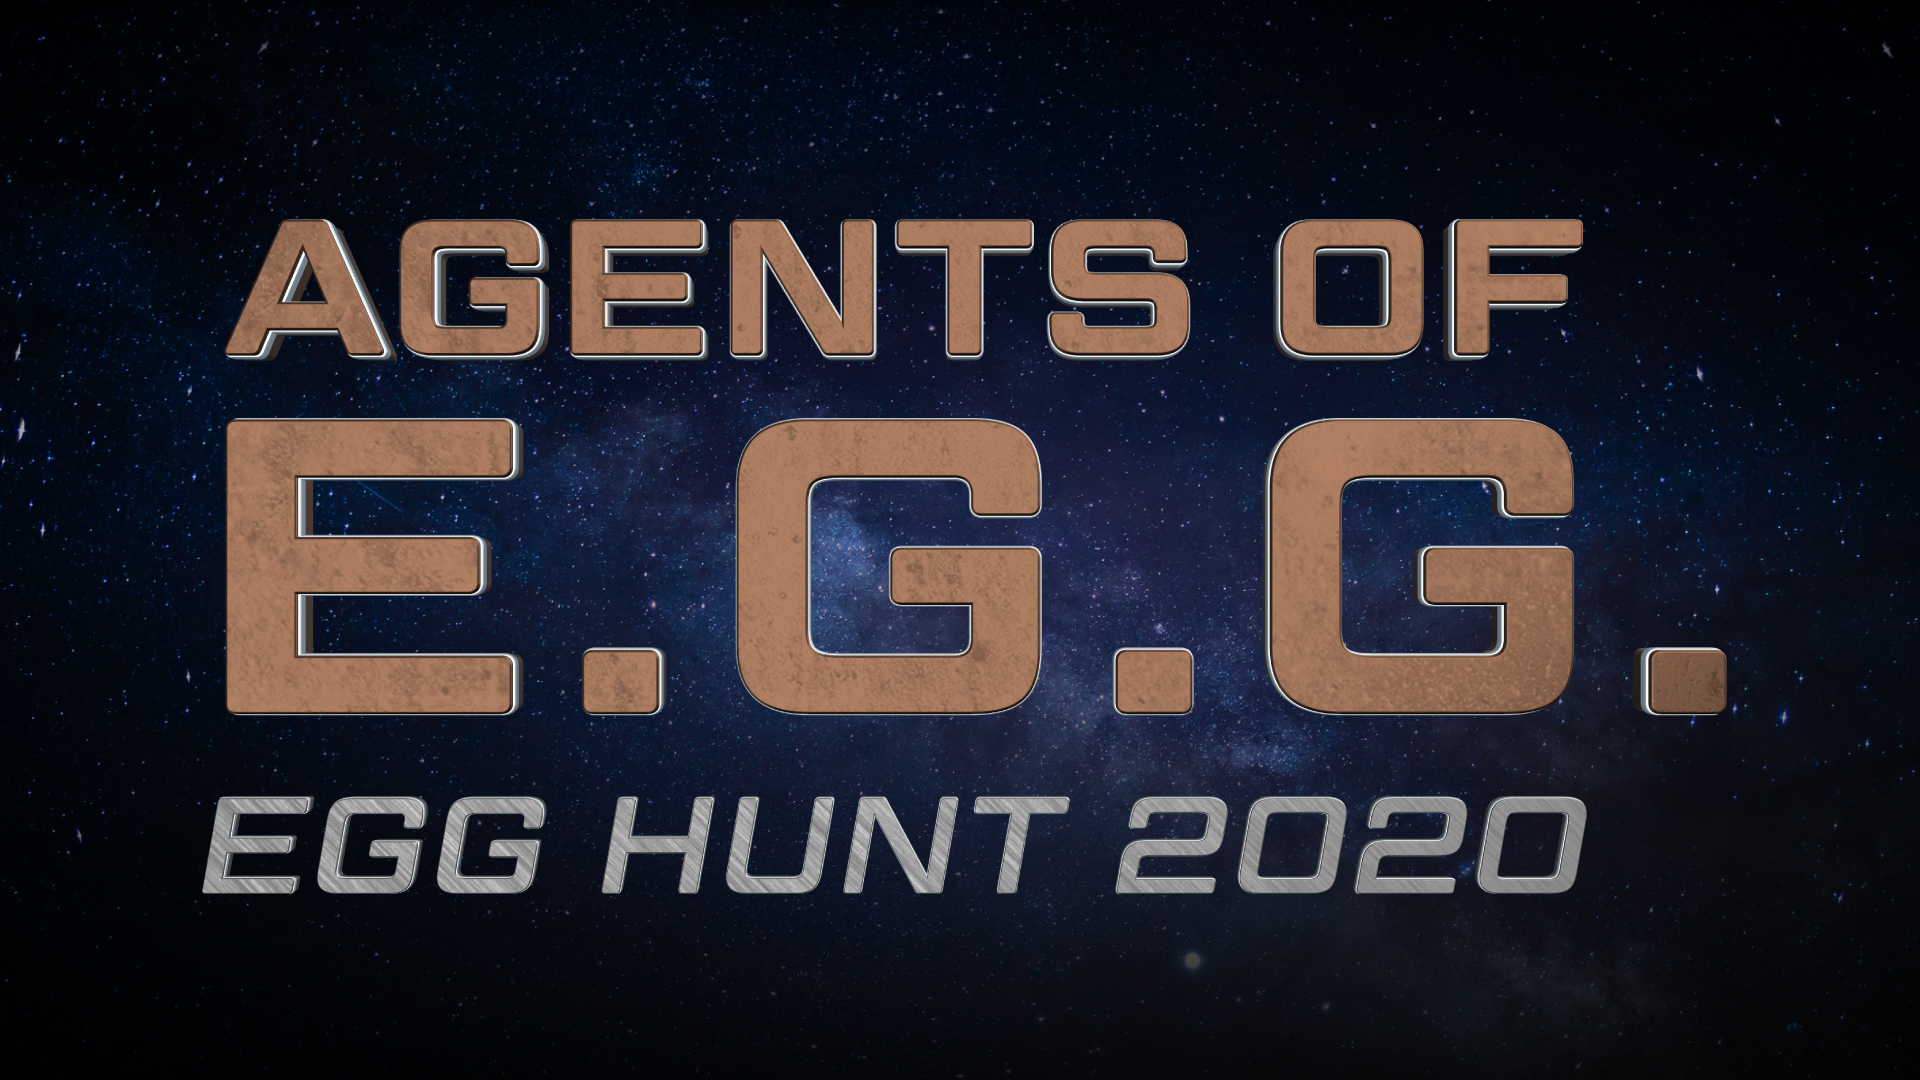 Egg Hunt 2020 Agents Of E G G Roblox Wikia Fandom - how i live stream secrets revealed how to livestream roblox